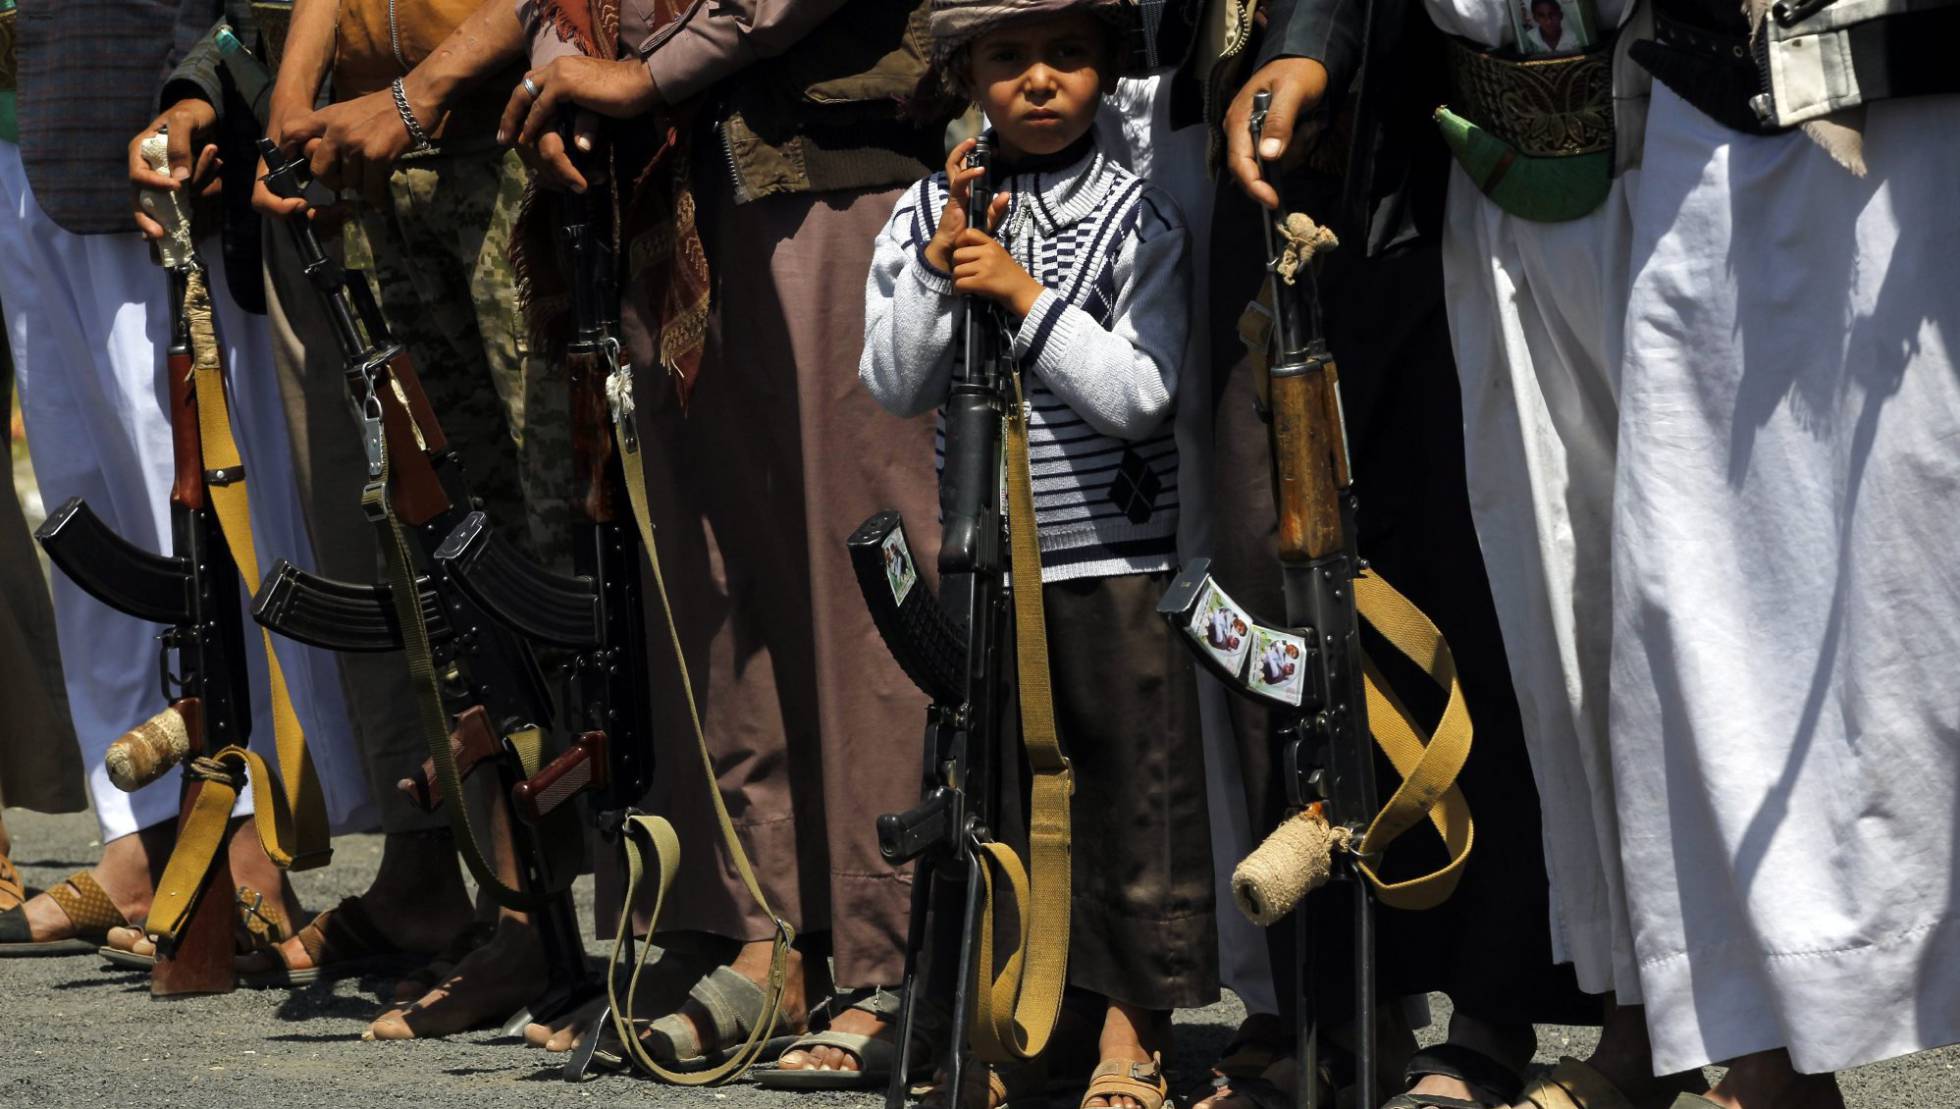 Conflicto en Yemen - Página 7 1475469705_201463_1475493342_noticia_normal_recorte1